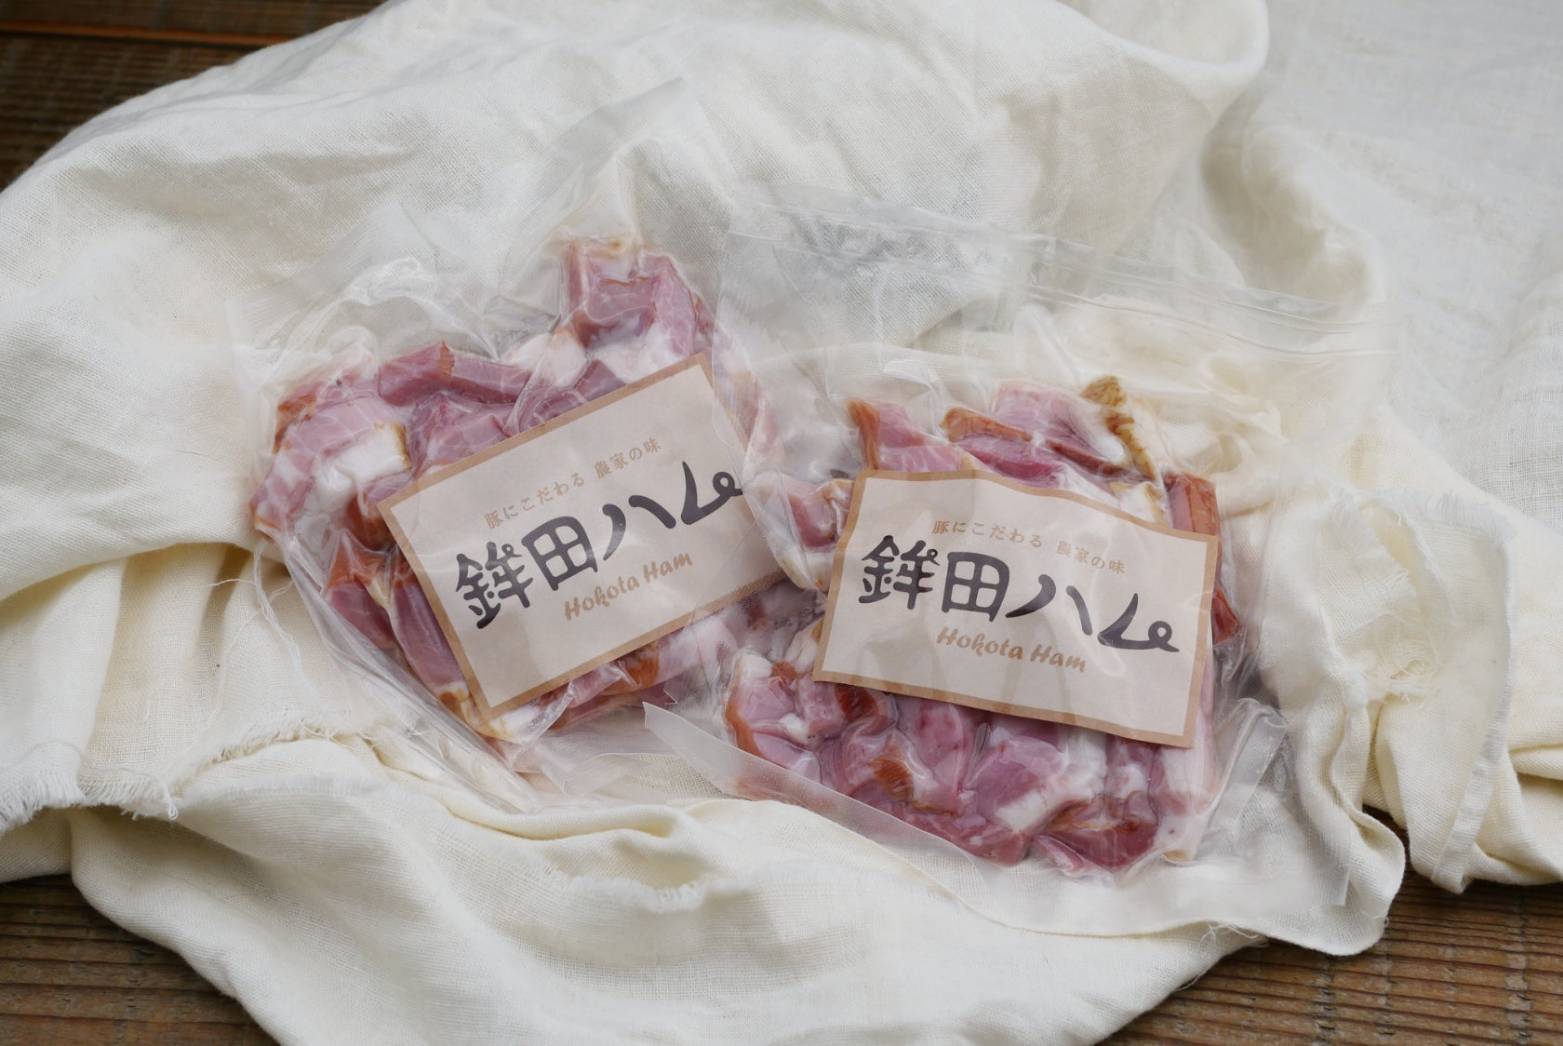 [放牧豚]ウデモモ挽肉きざみウデベーコンセット デュロック純粋種 やまの華豚 ウデモモ挽肉1袋350g+きざみベーコン100g×2